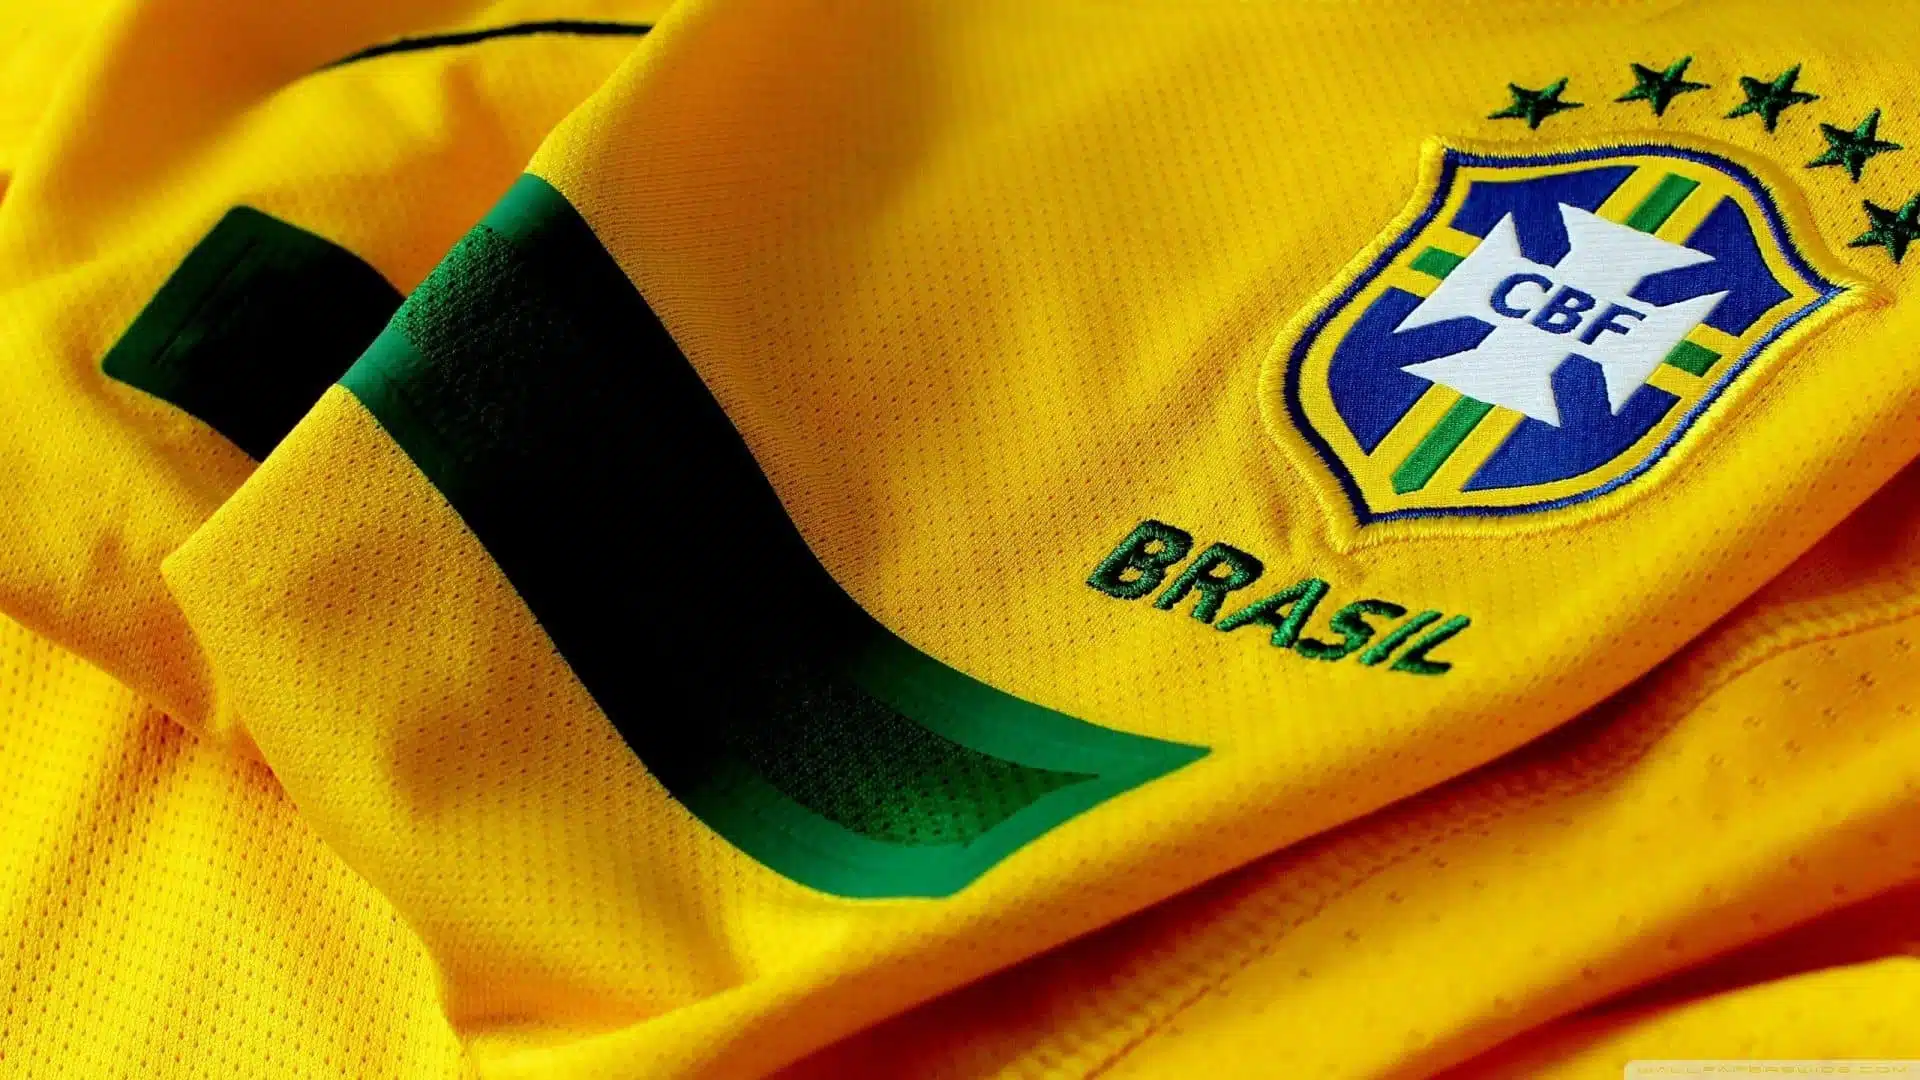 Cada jogador da seleção brasileira poderá receber R$ 5 milhões; saiba por quê